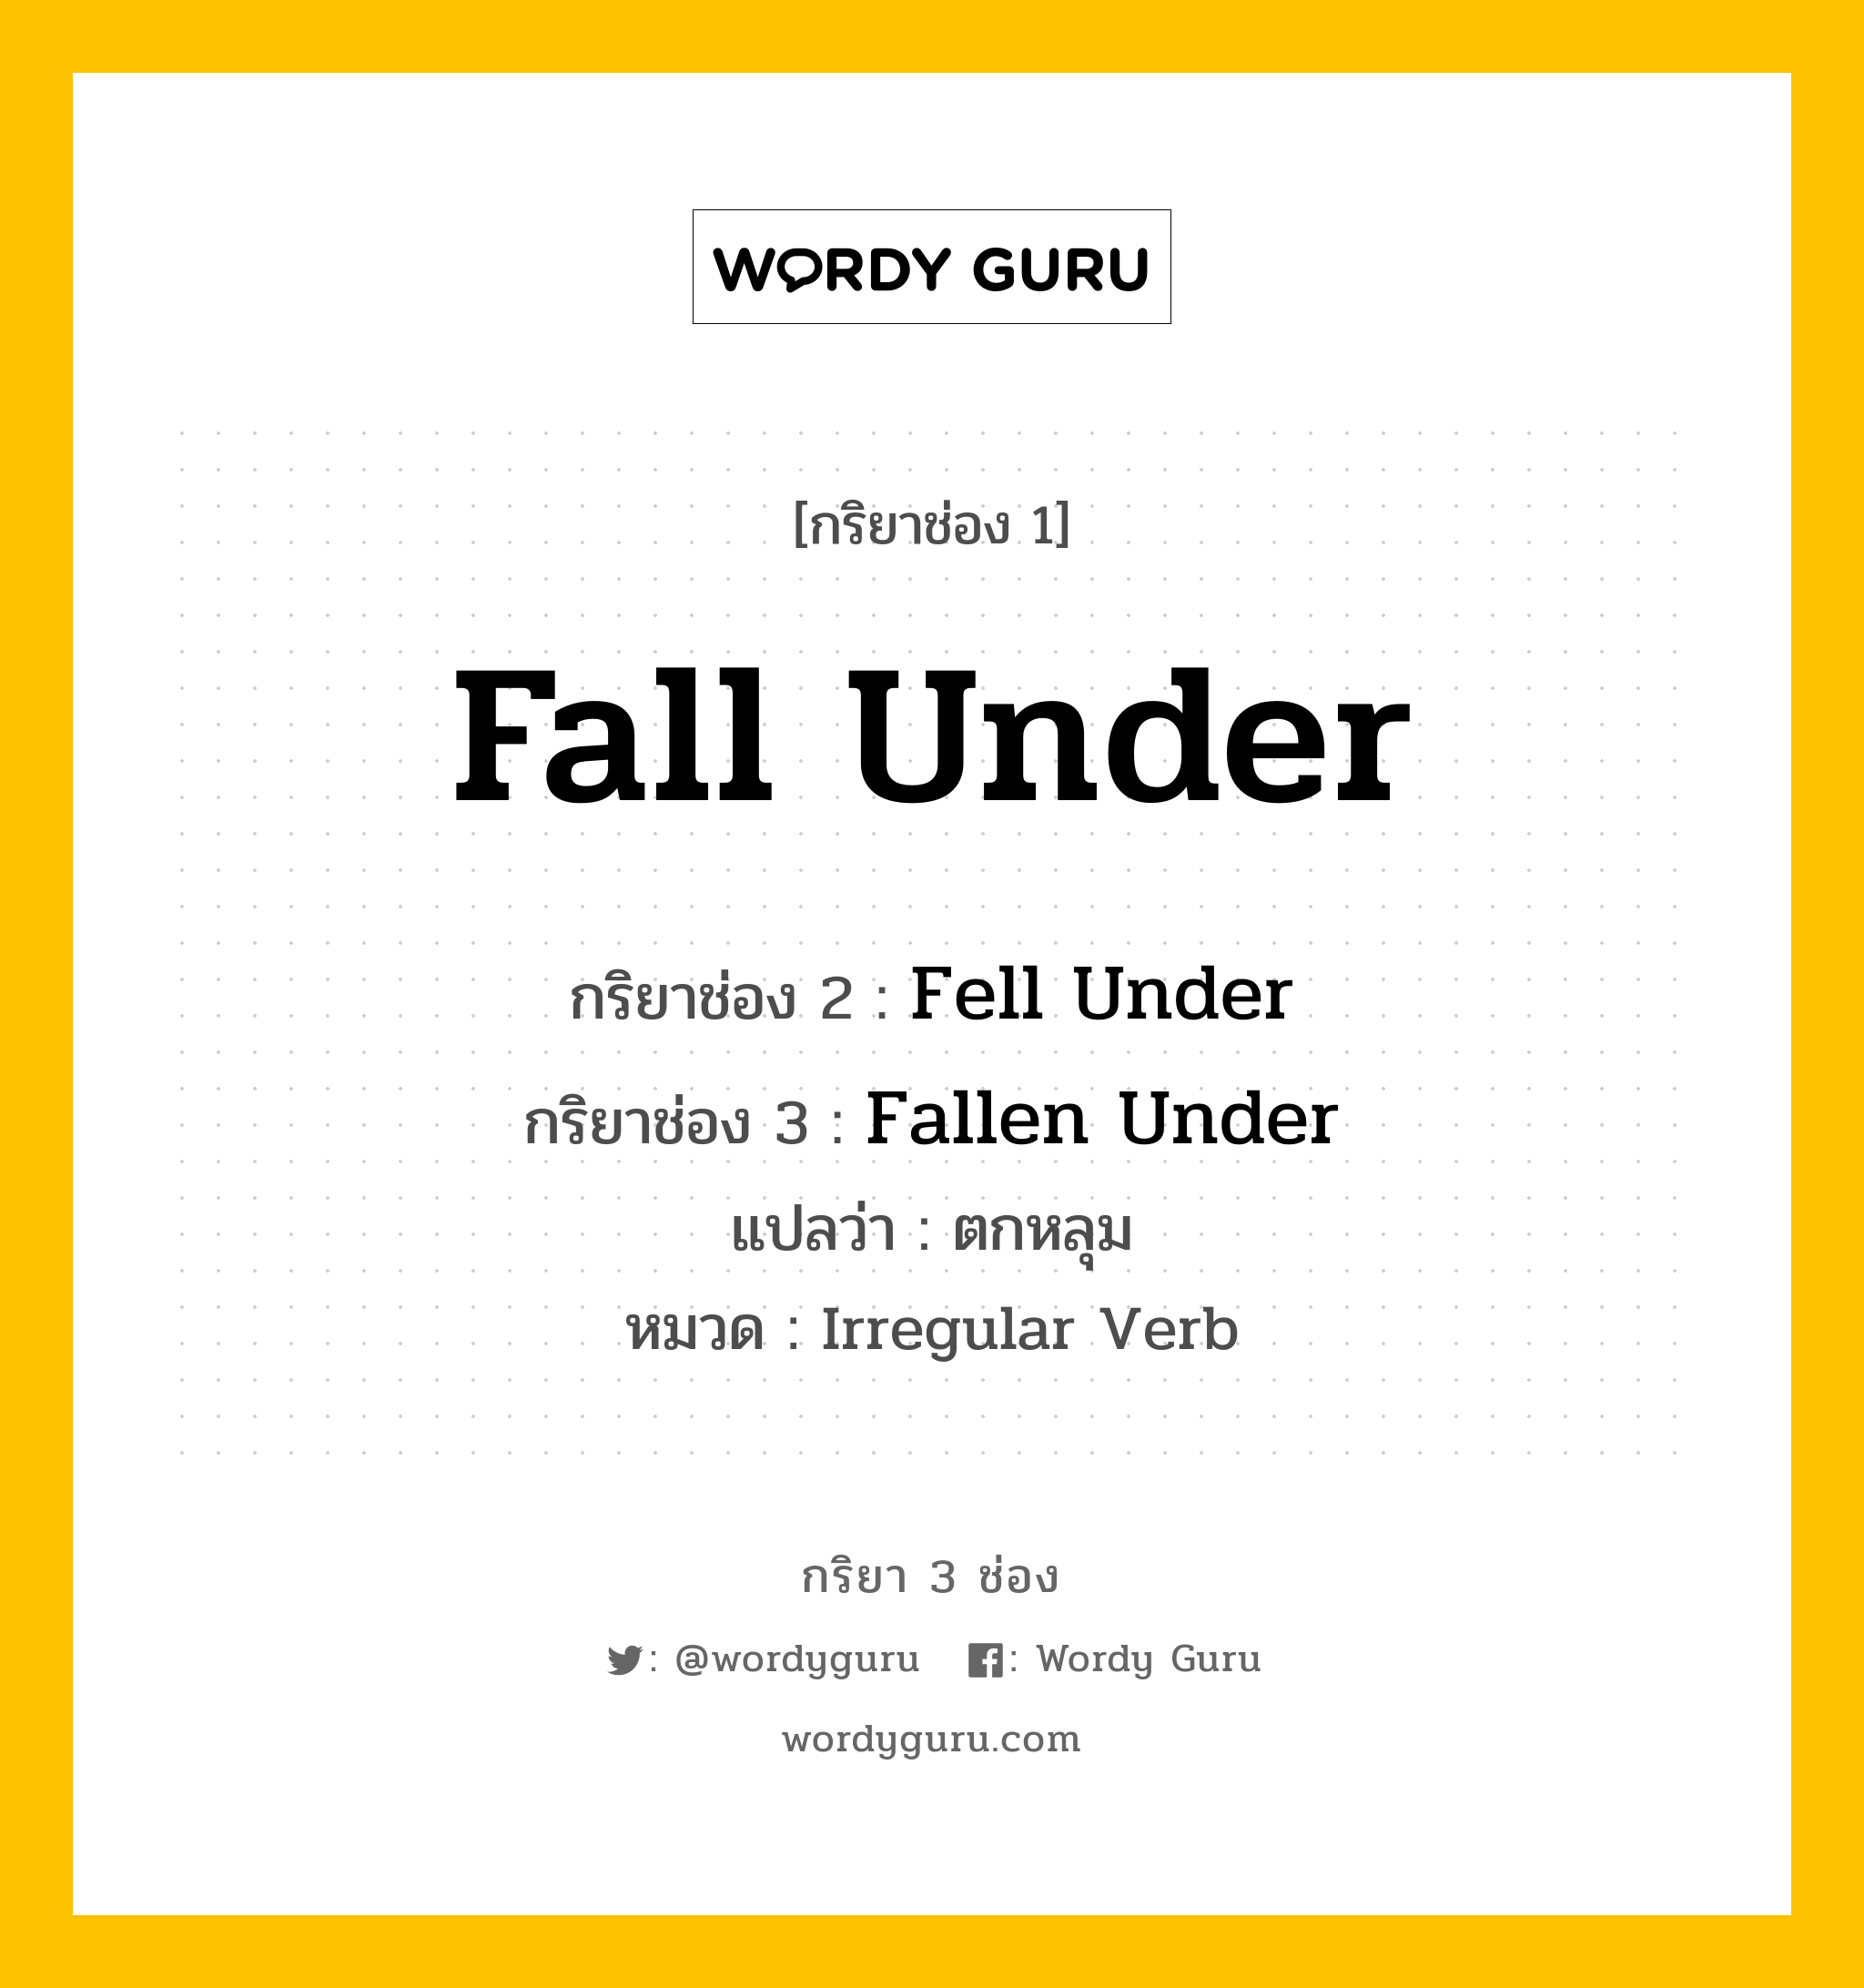 กริยา 3 ช่อง: Fall Under ช่อง 2 Fall Under ช่อง 3 คืออะไร, กริยาช่อง 1 Fall Under กริยาช่อง 2 Fell Under กริยาช่อง 3 Fallen Under แปลว่า ตกหลุม หมวด Irregular Verb หมวด Irregular Verb